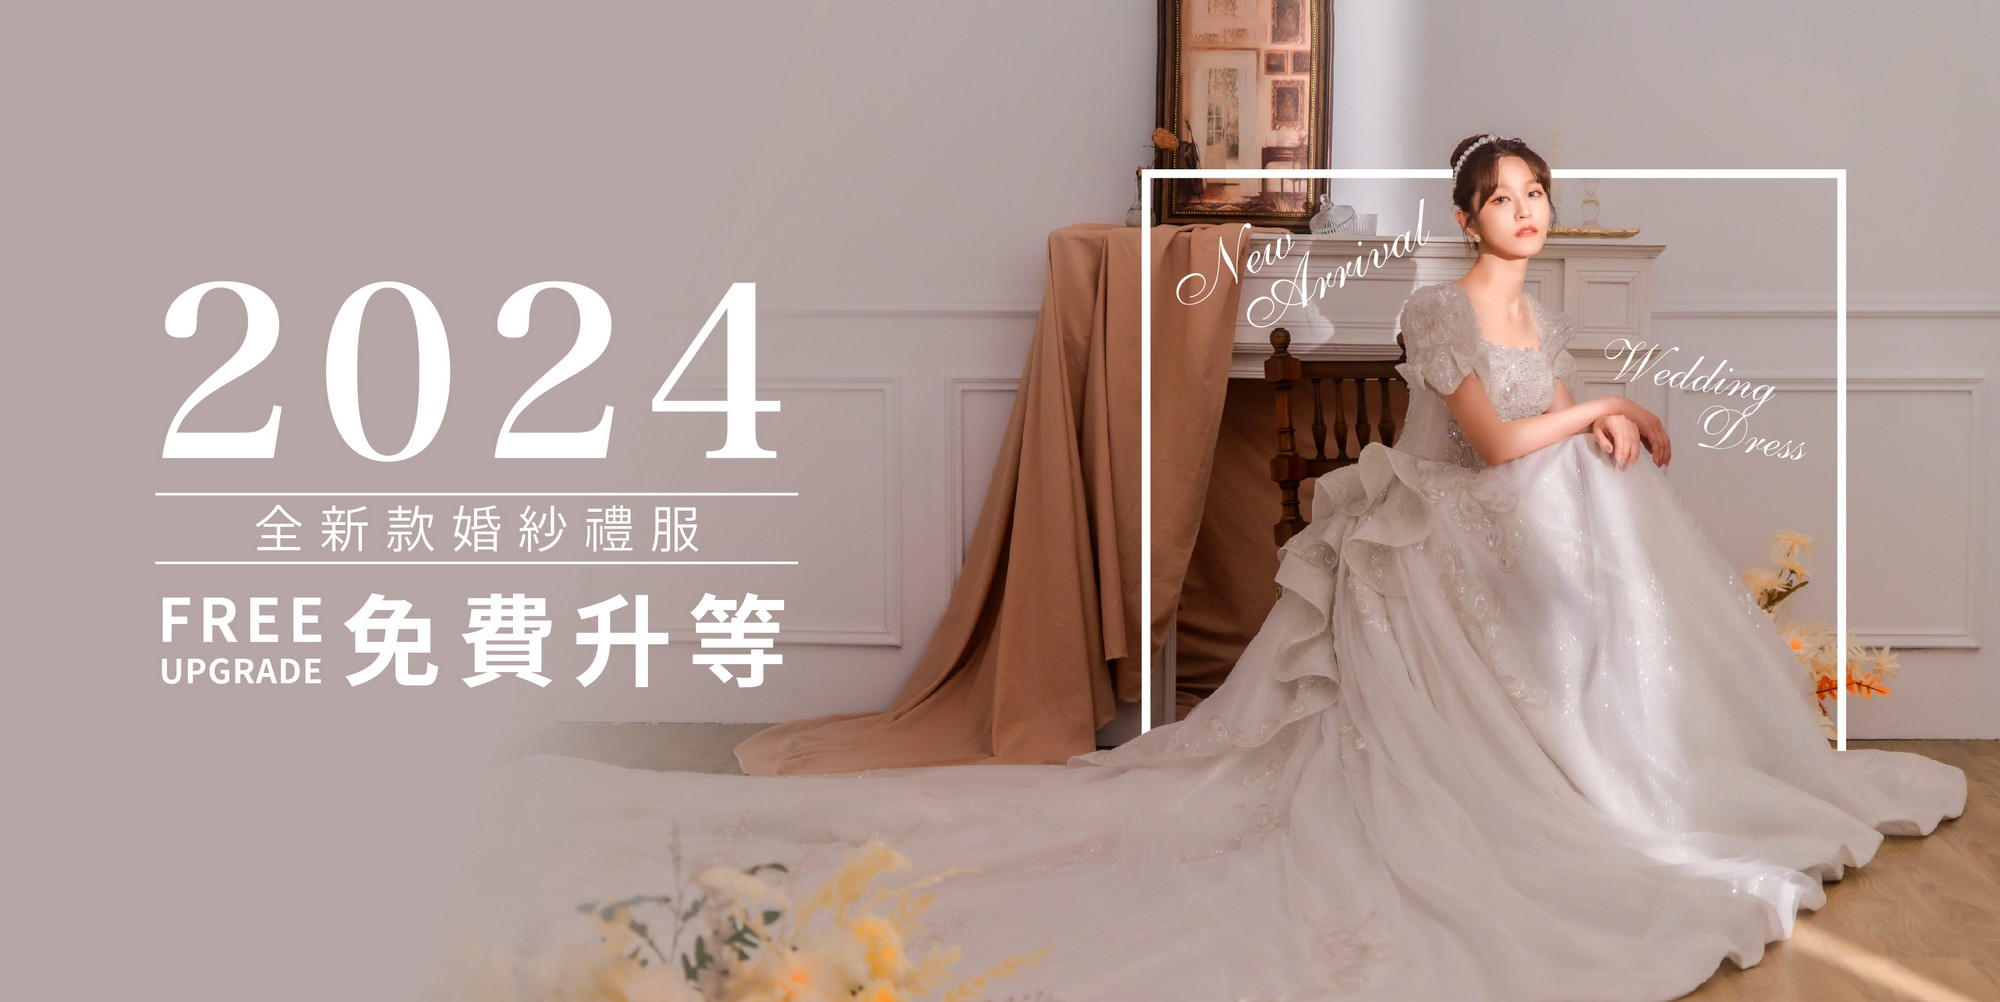 台南 禮服推薦,婚紗推薦 台南, 台南 婚紗價格,台南 婚紗工作室